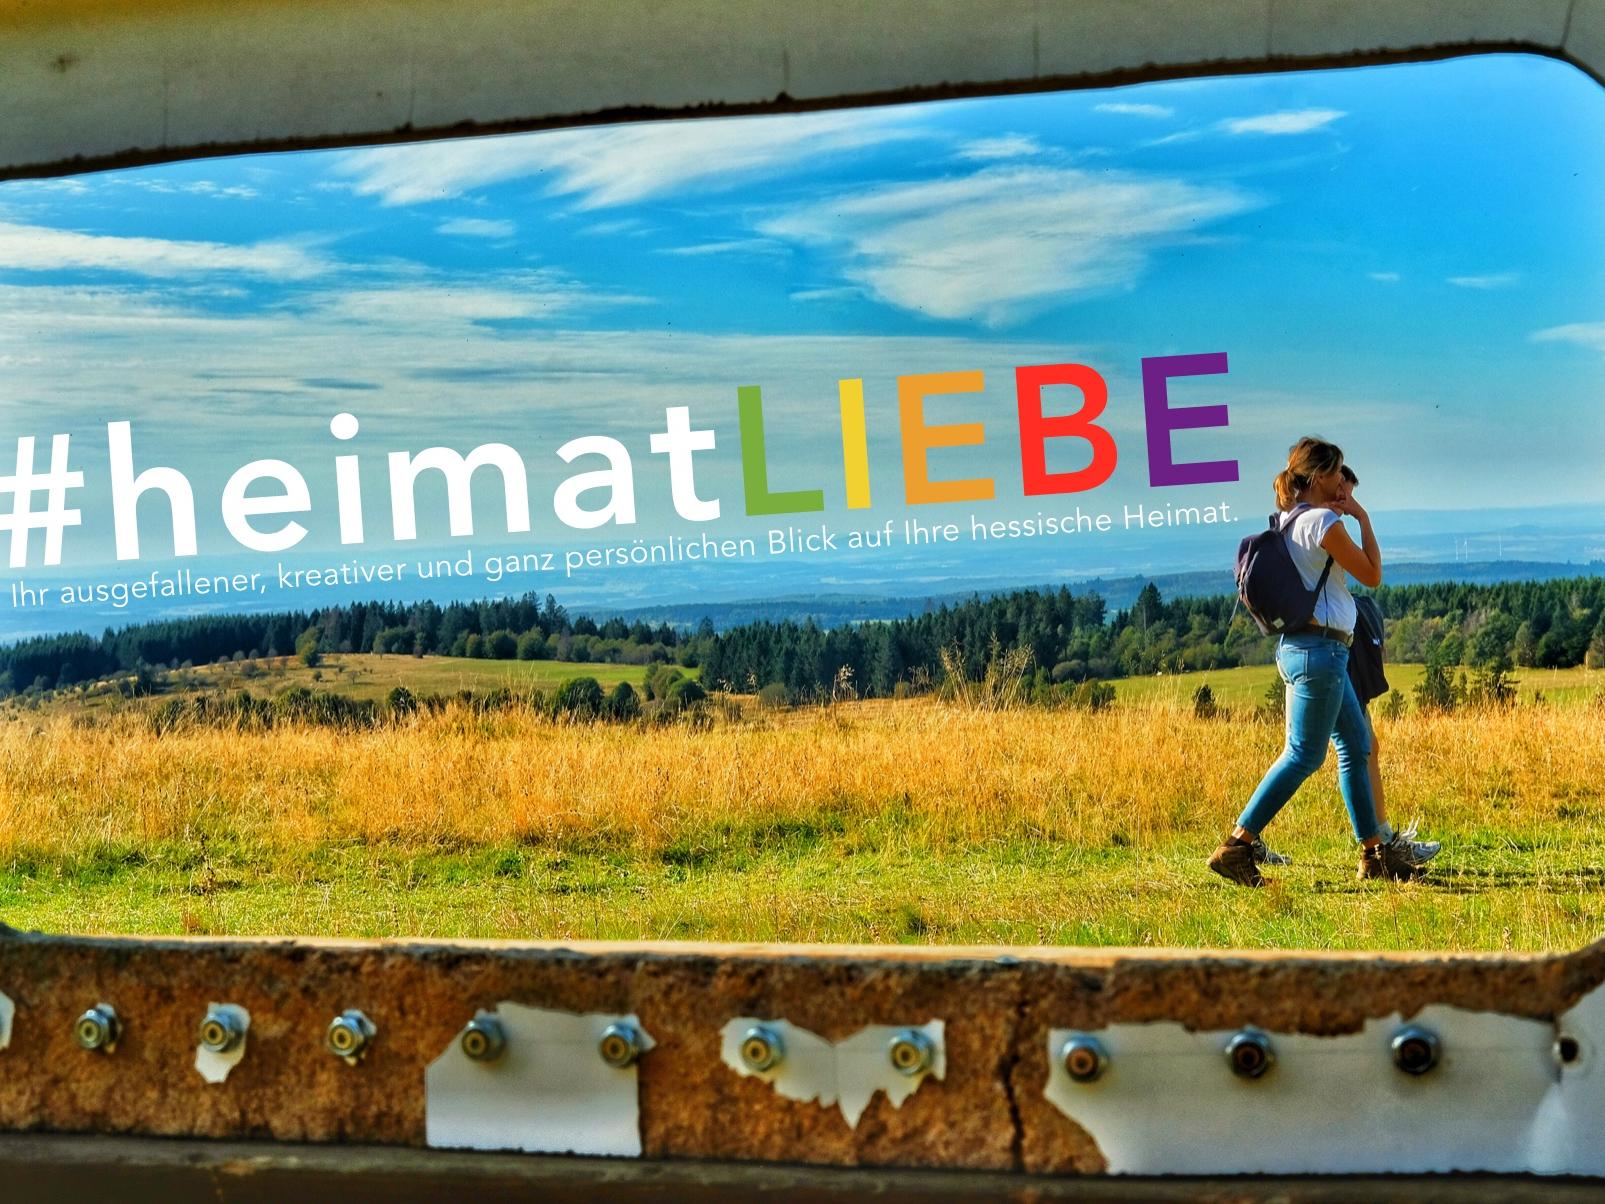 Fotowettbewerb #heimatLIEBE bis zum 31. August